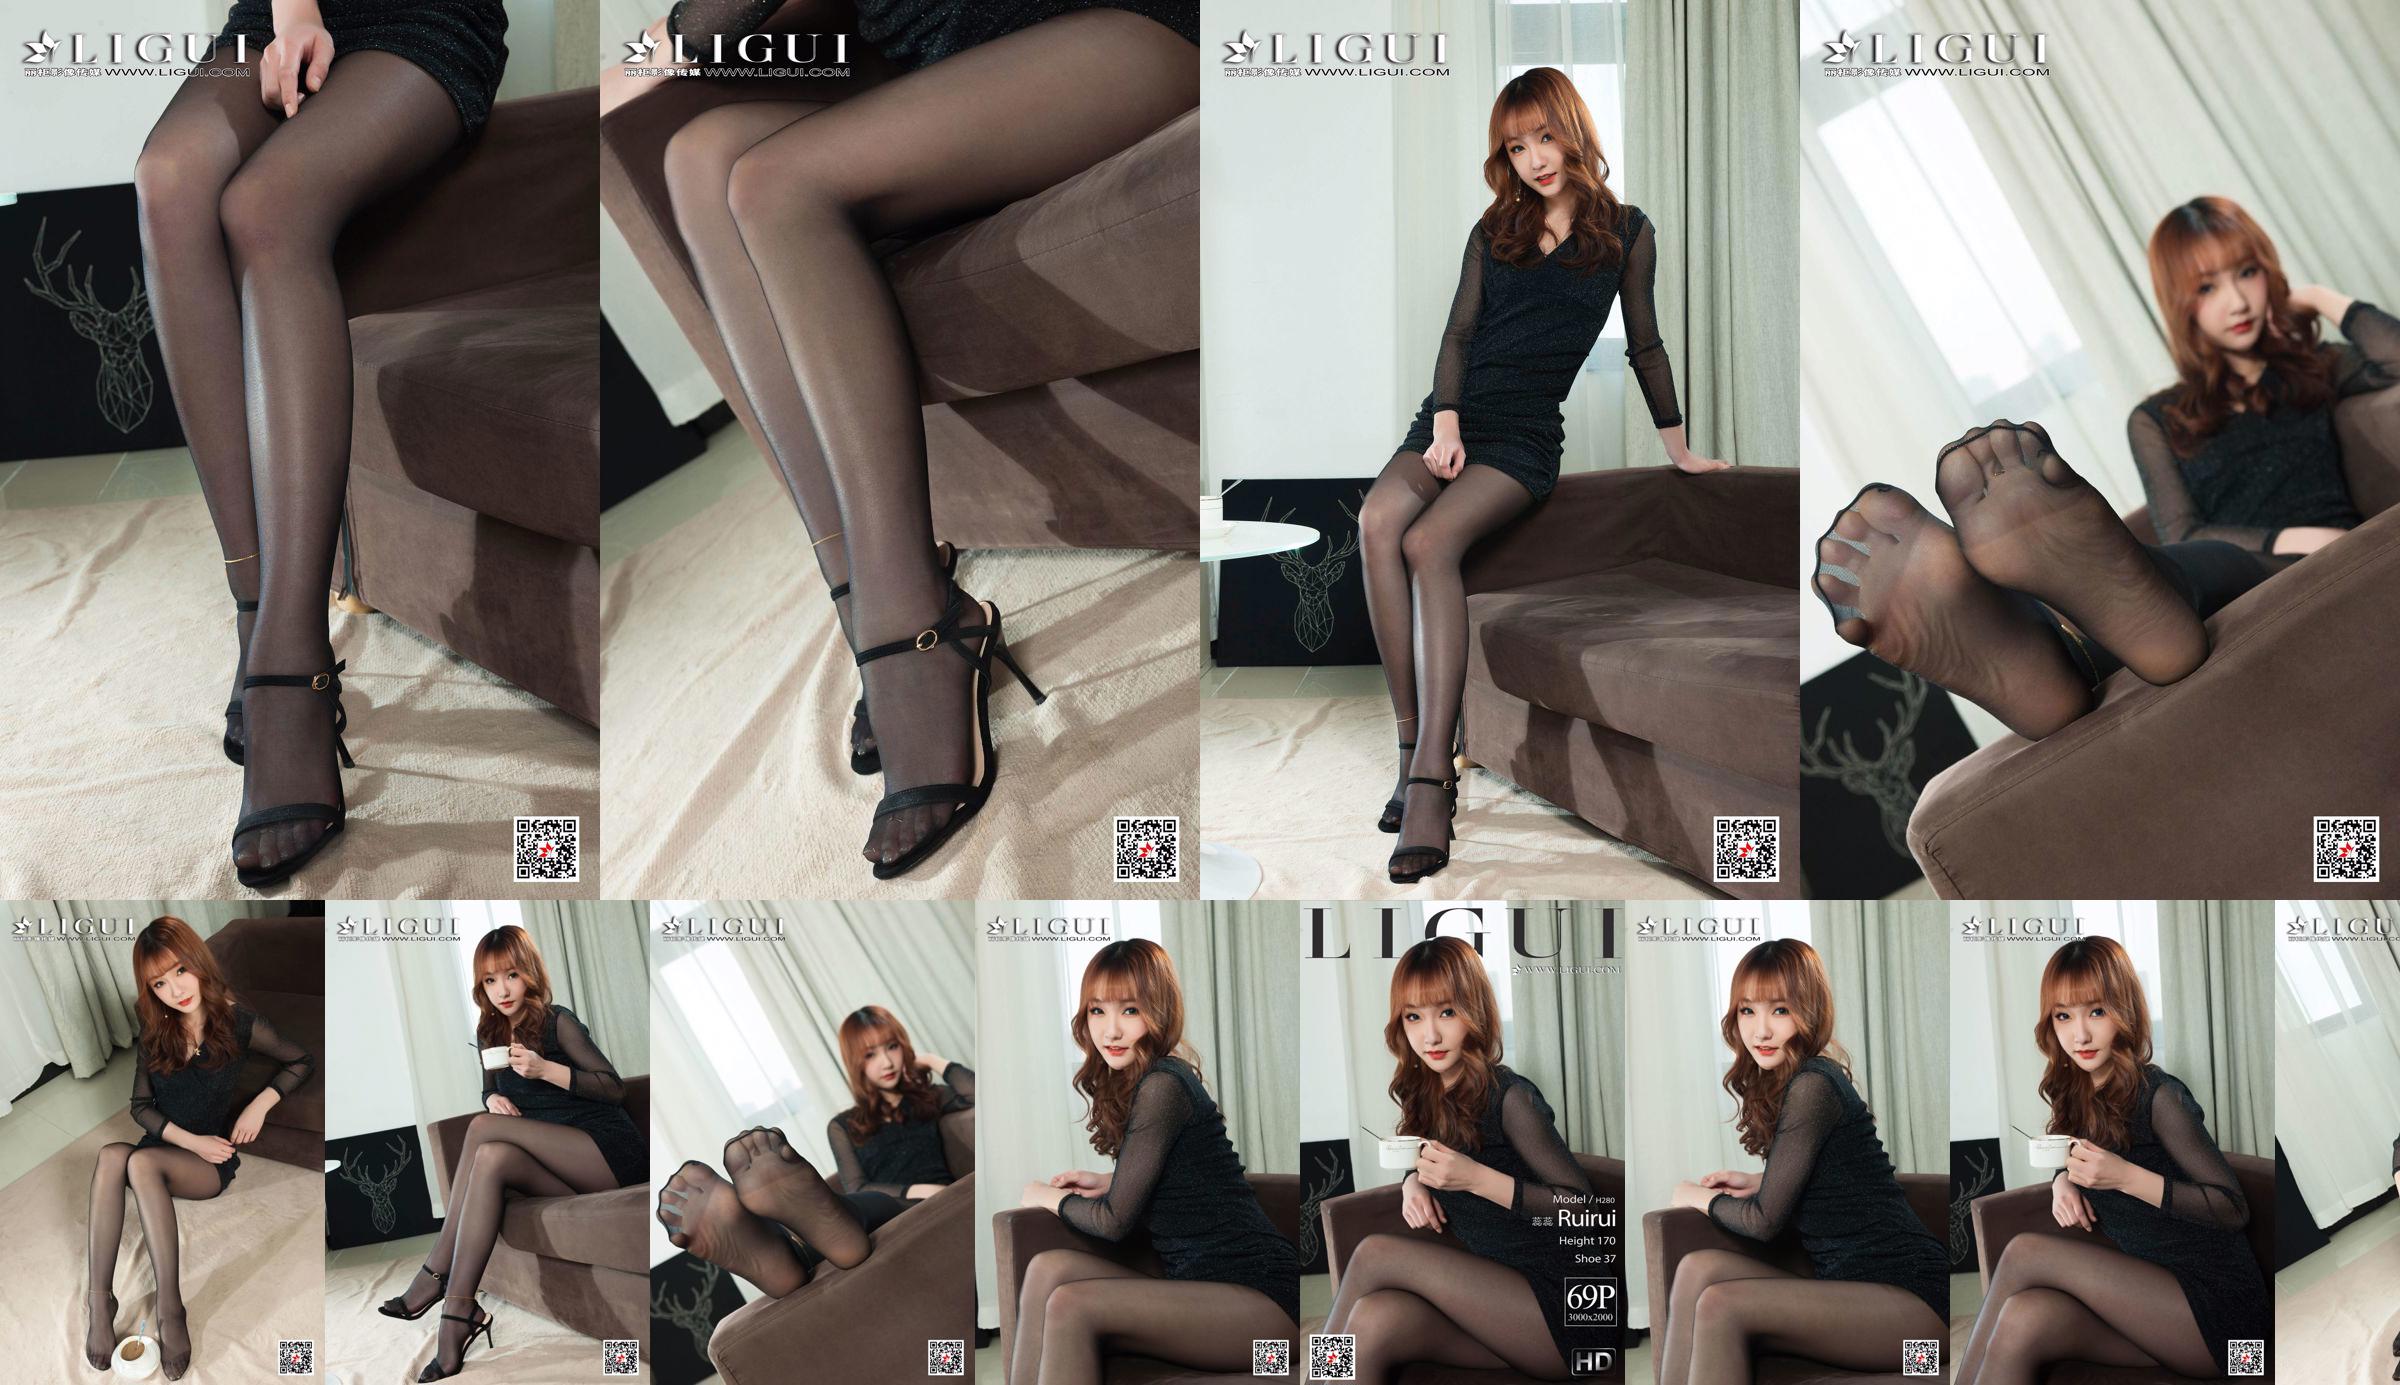 Người mẫu Ruirui "Đôi chân đẹp và đôi chân ngọc bích trong vớ đen" [Ligui Ligui] No.f72f2d Trang 10